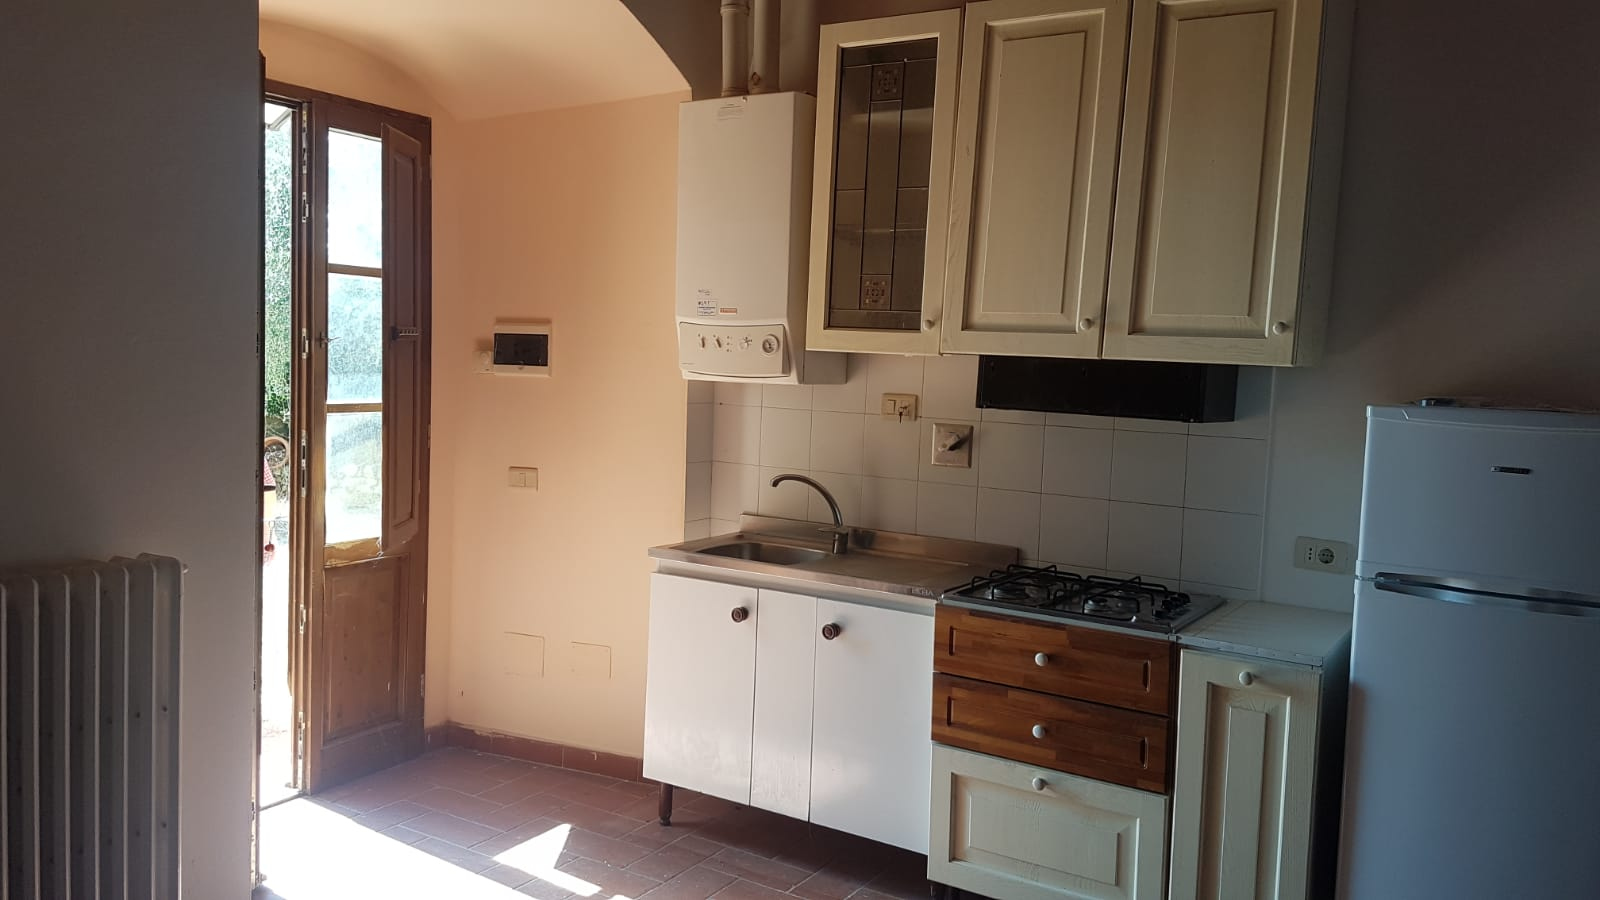 Appartamento in affitto a Montespertoli, 3 locali, prezzo € 700 | PortaleAgenzieImmobiliari.it